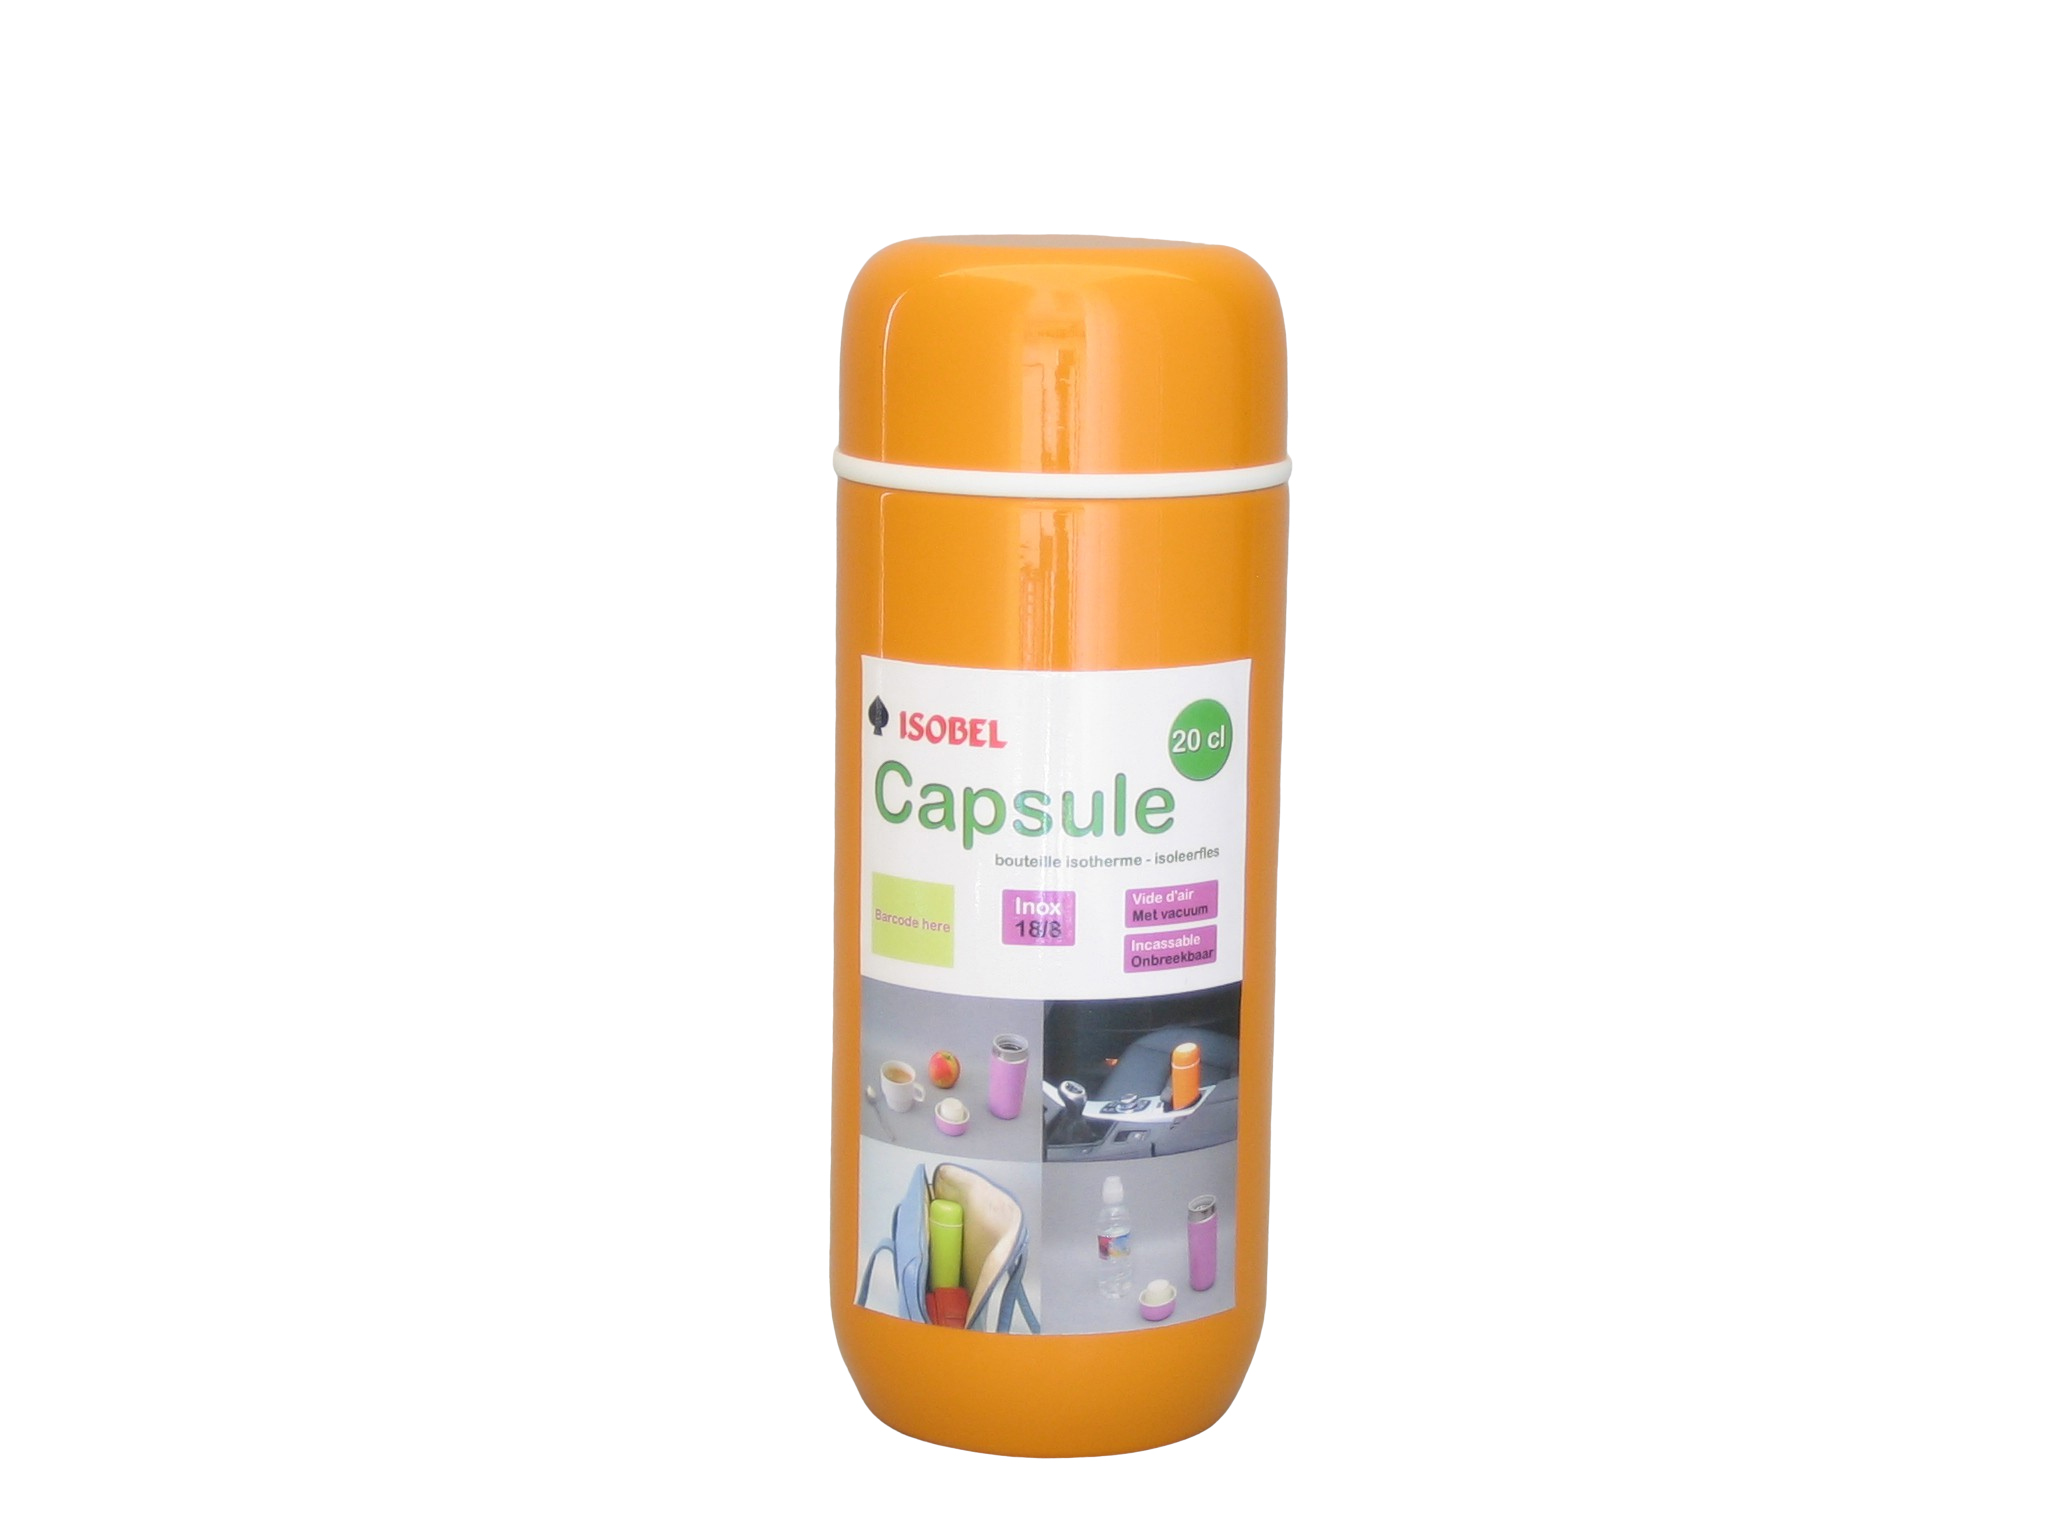 CAPSULE-021 - Vacuum flask SS unbreakable orange 0.20 L - Isobel